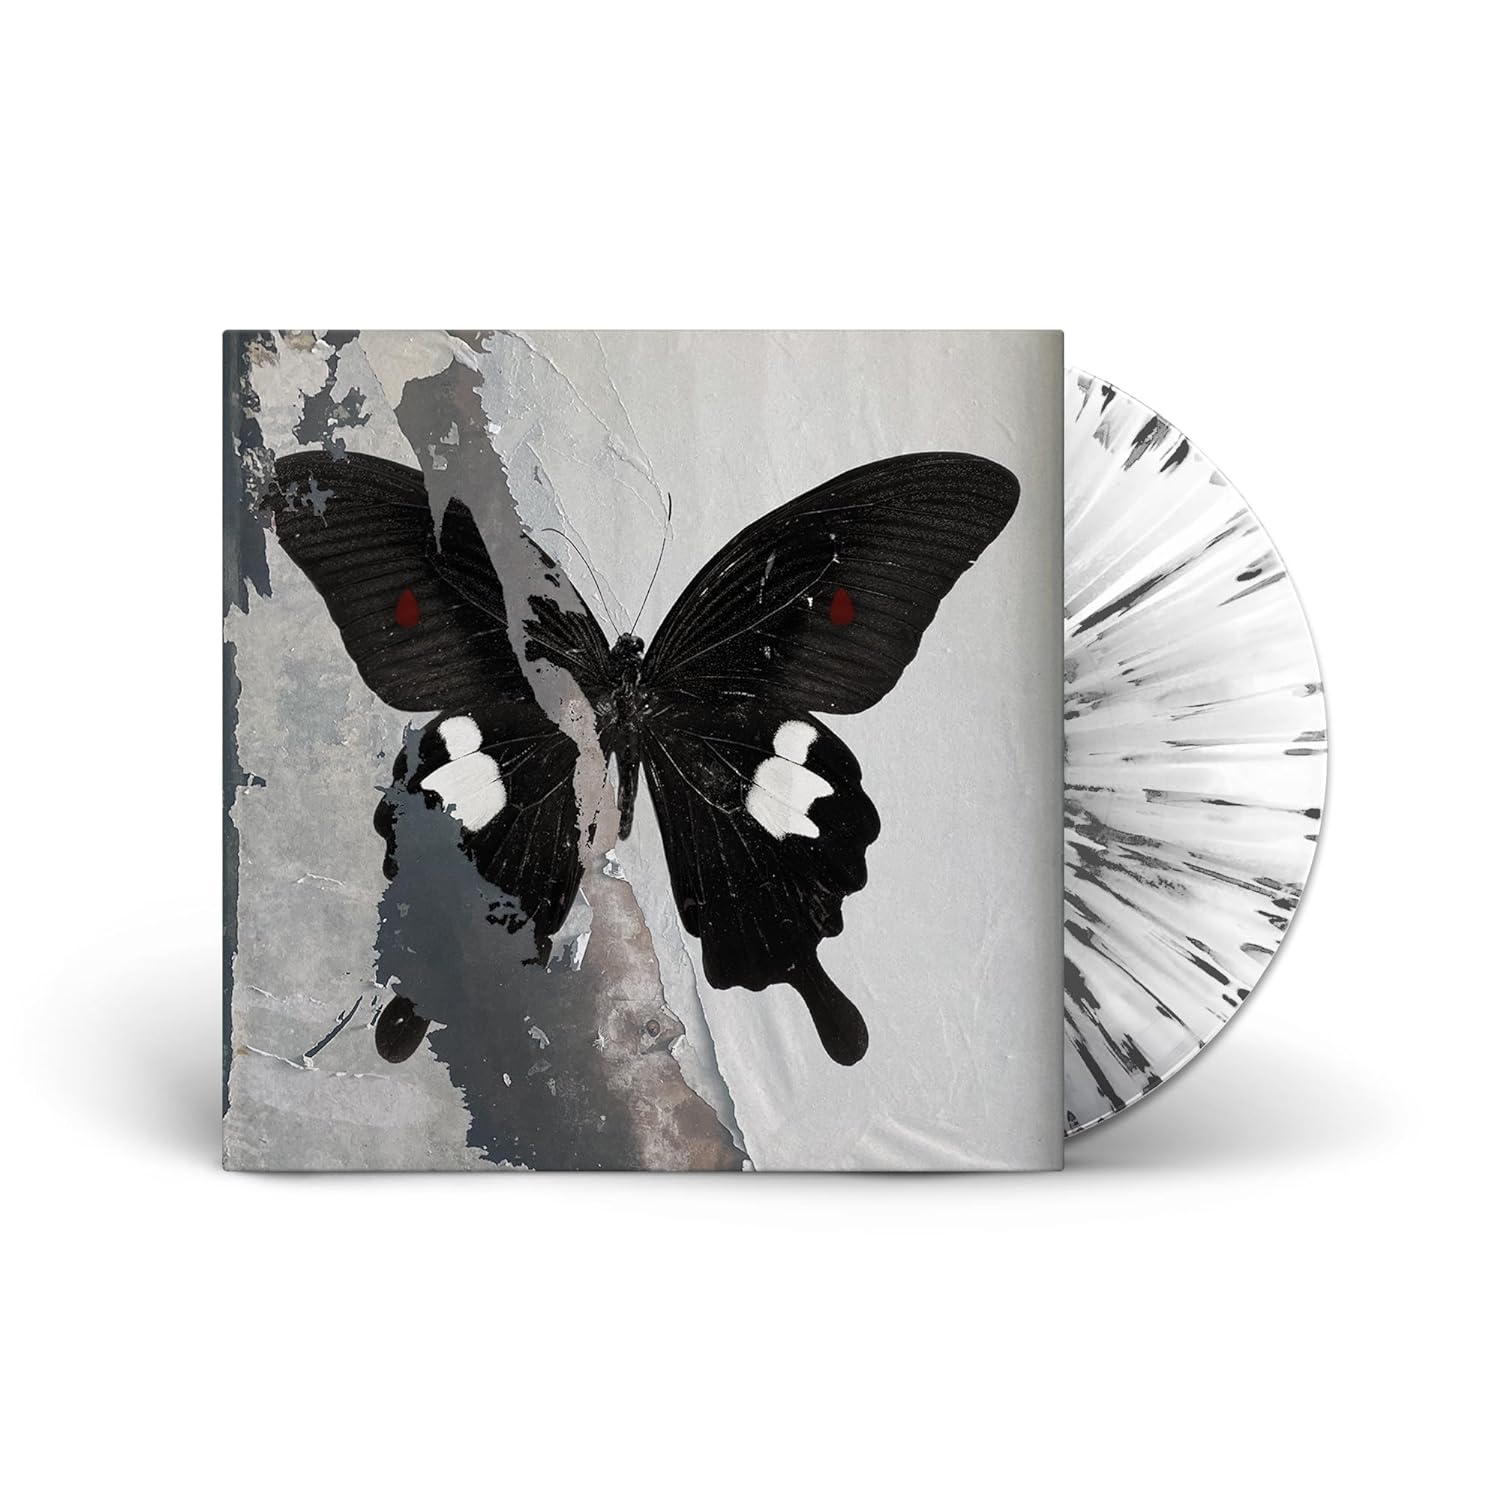 DEATH CULT – PARADISE NOW splattered clear vinyl LP